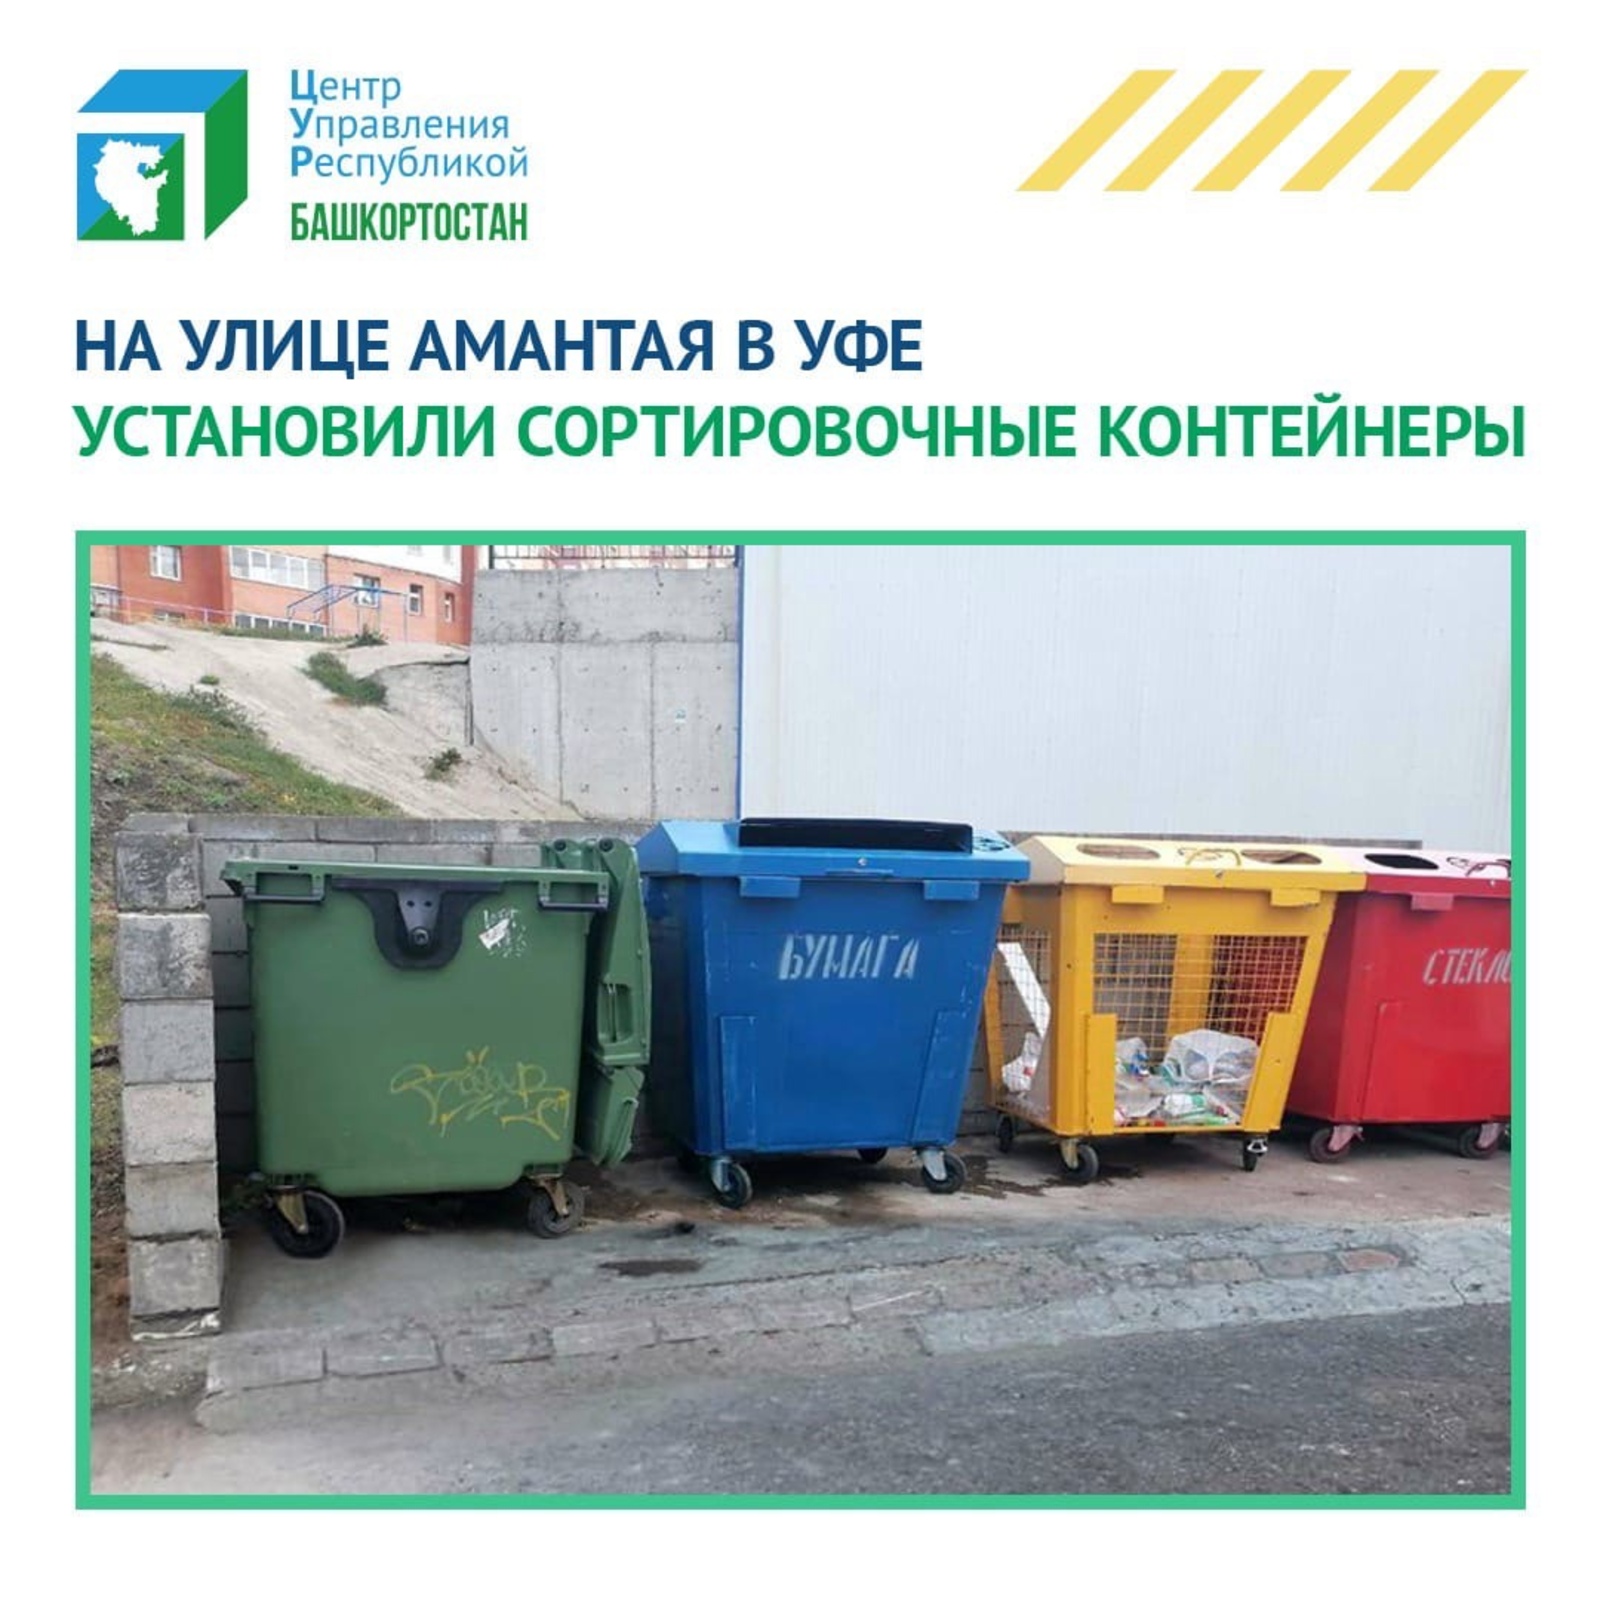 ЦУР Башкортостана помогает организовать раздельный сбор мусора